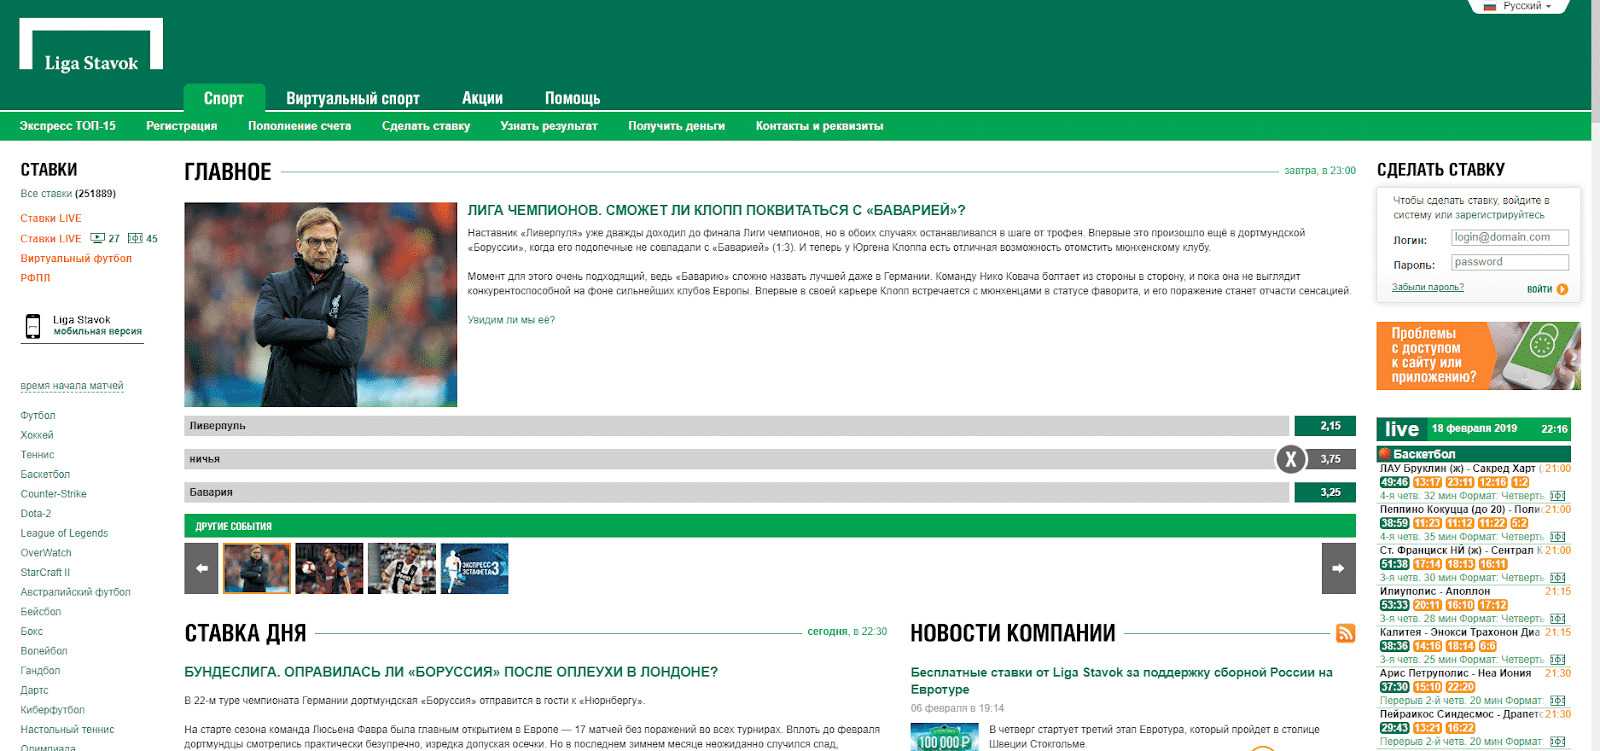 Главная страница сайта Лига ставок